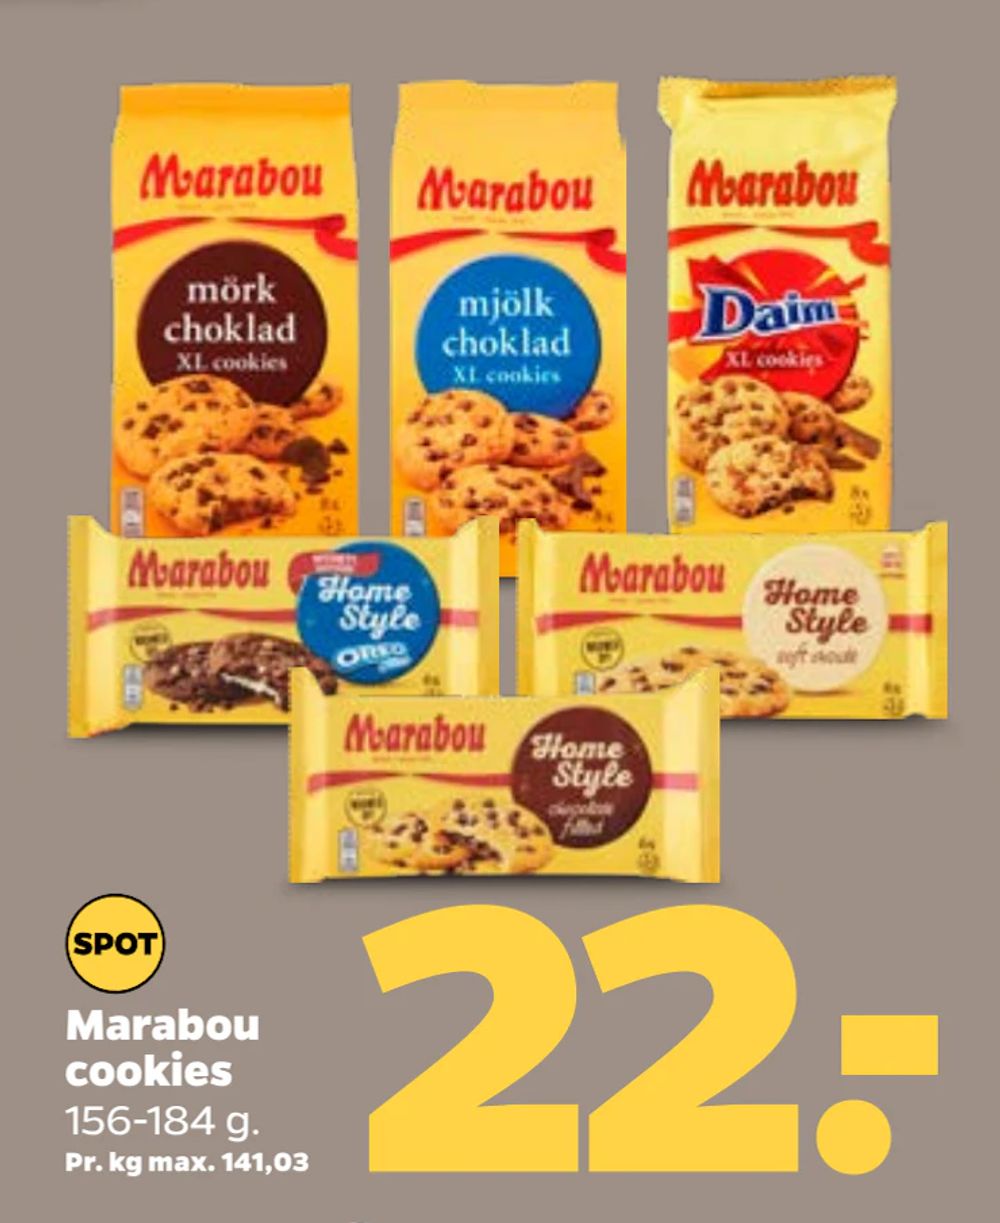 Tilbud på Marabou cookies fra Netto til 22 kr.